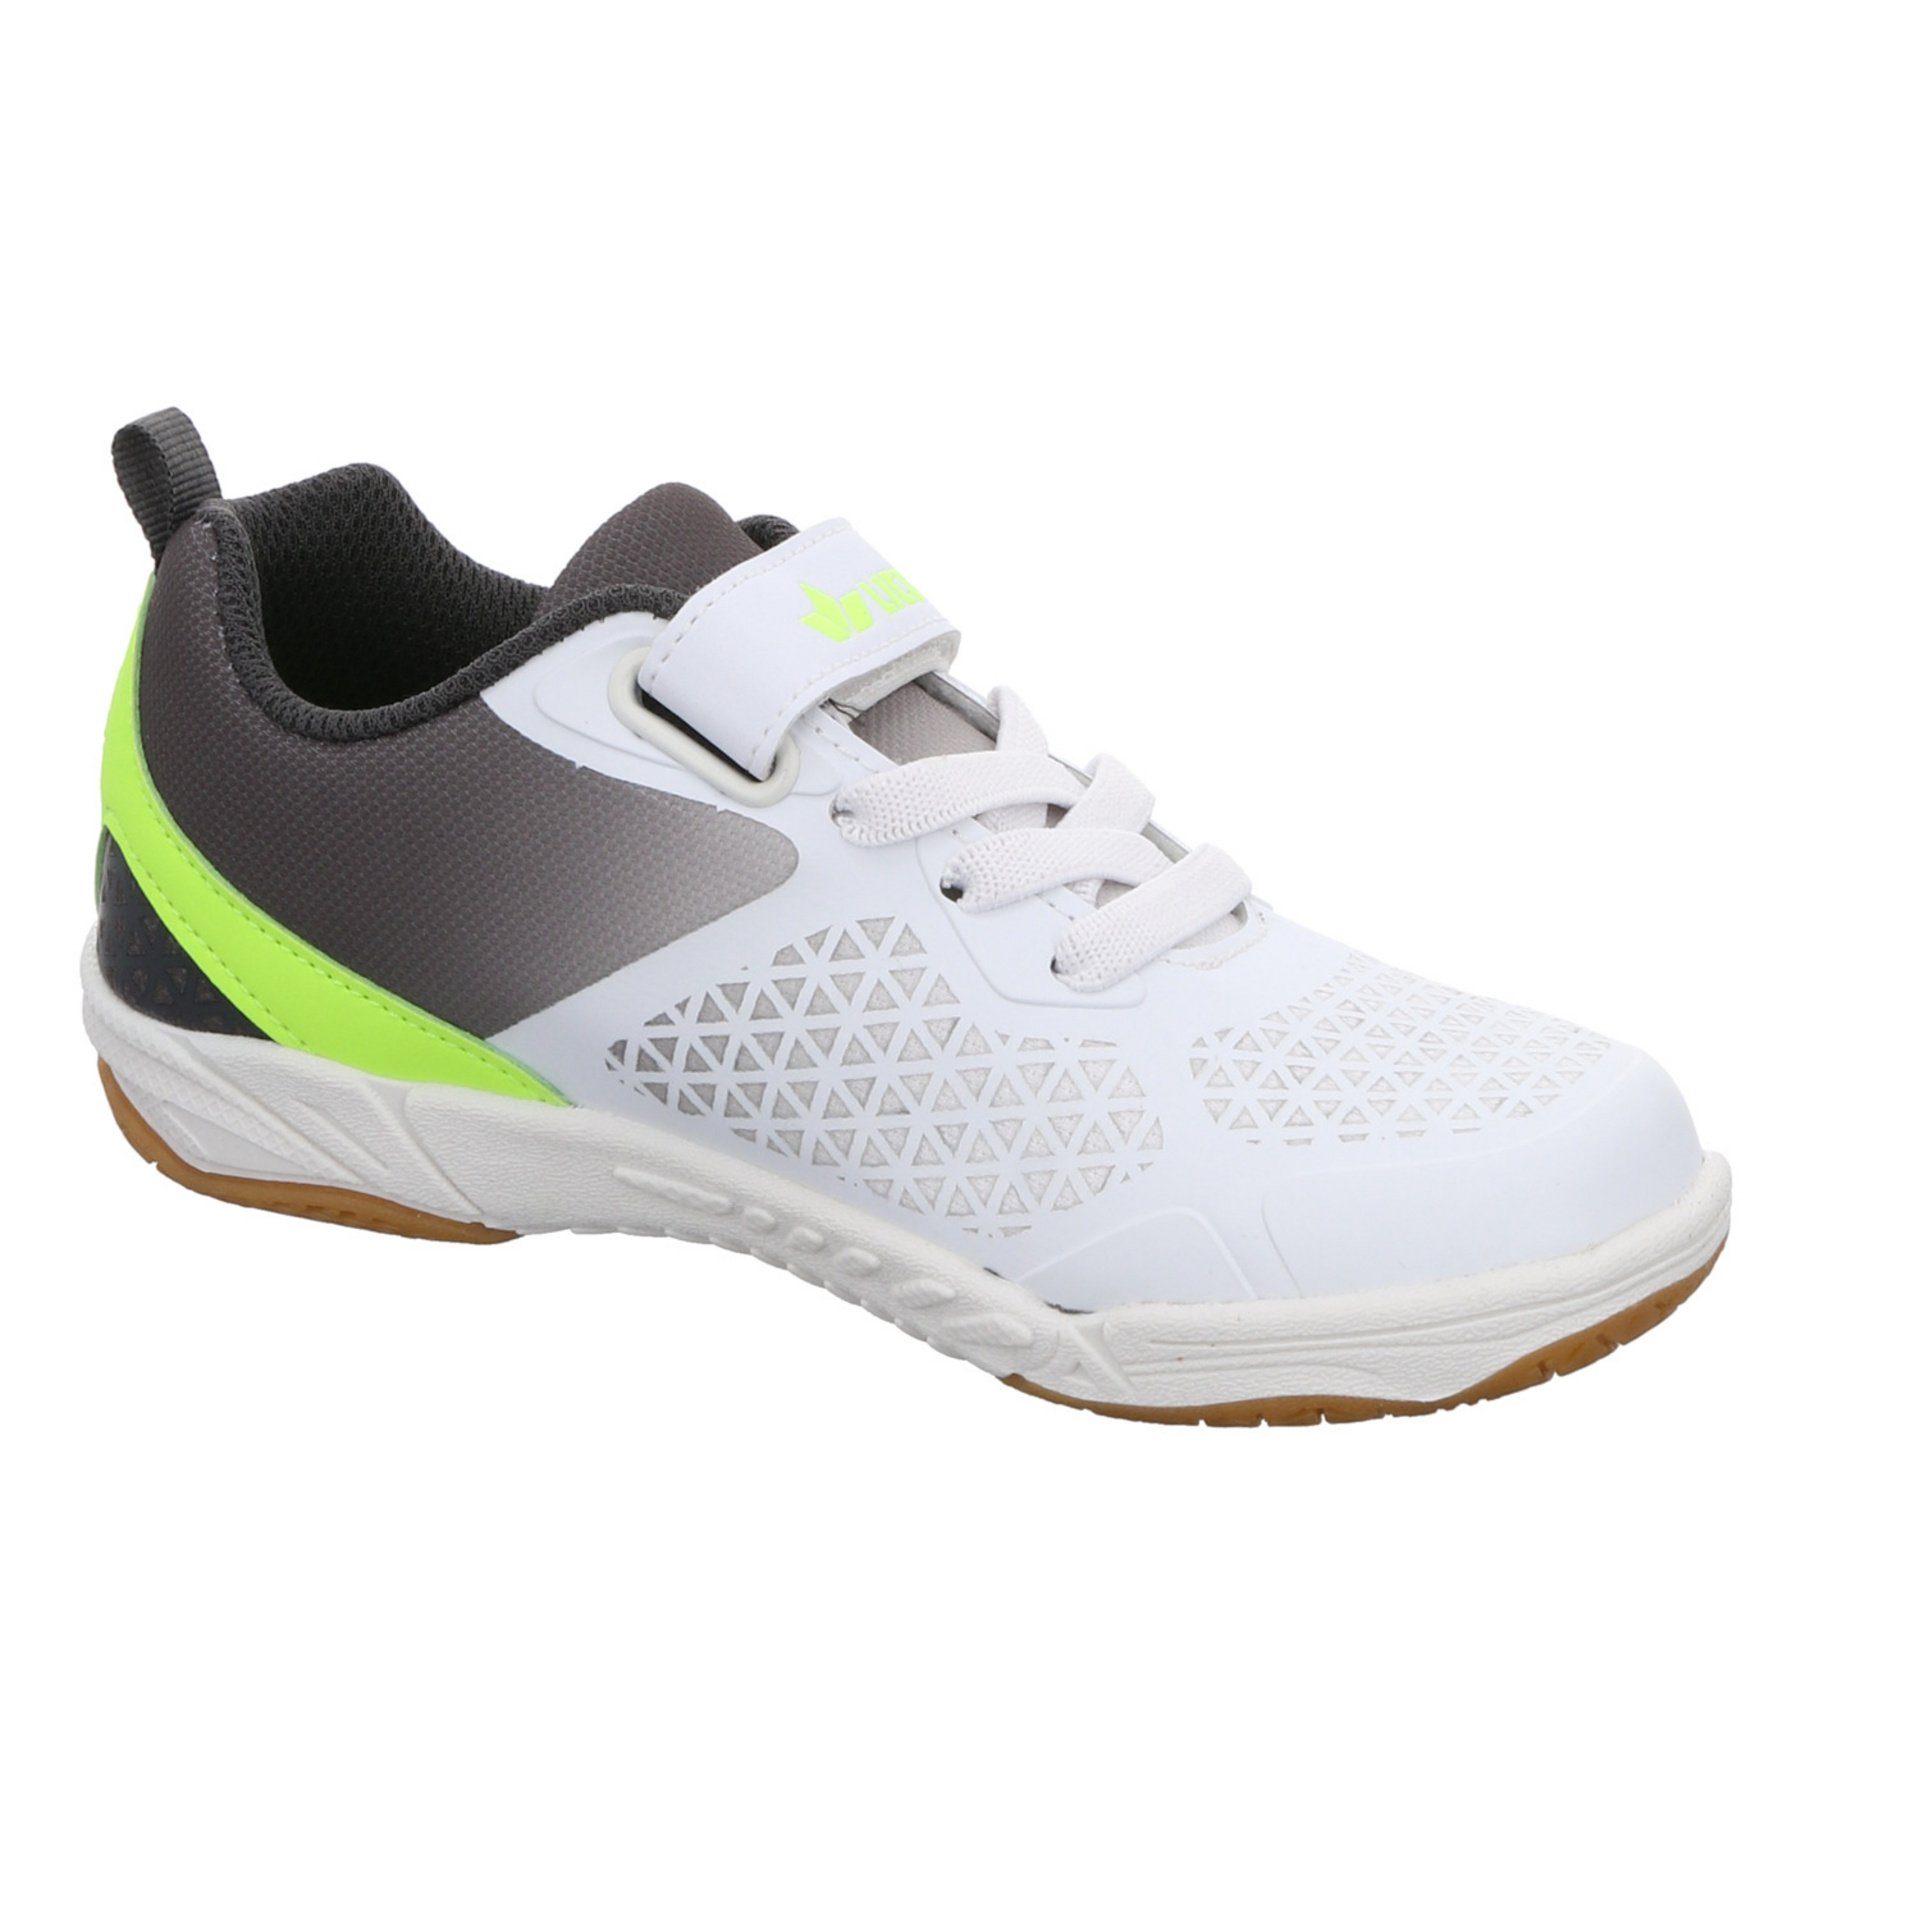 Lico weiss/grau/lemon Kit Sneaker Synthetikkombination Synthetikkombination gemustert VS Sneaker